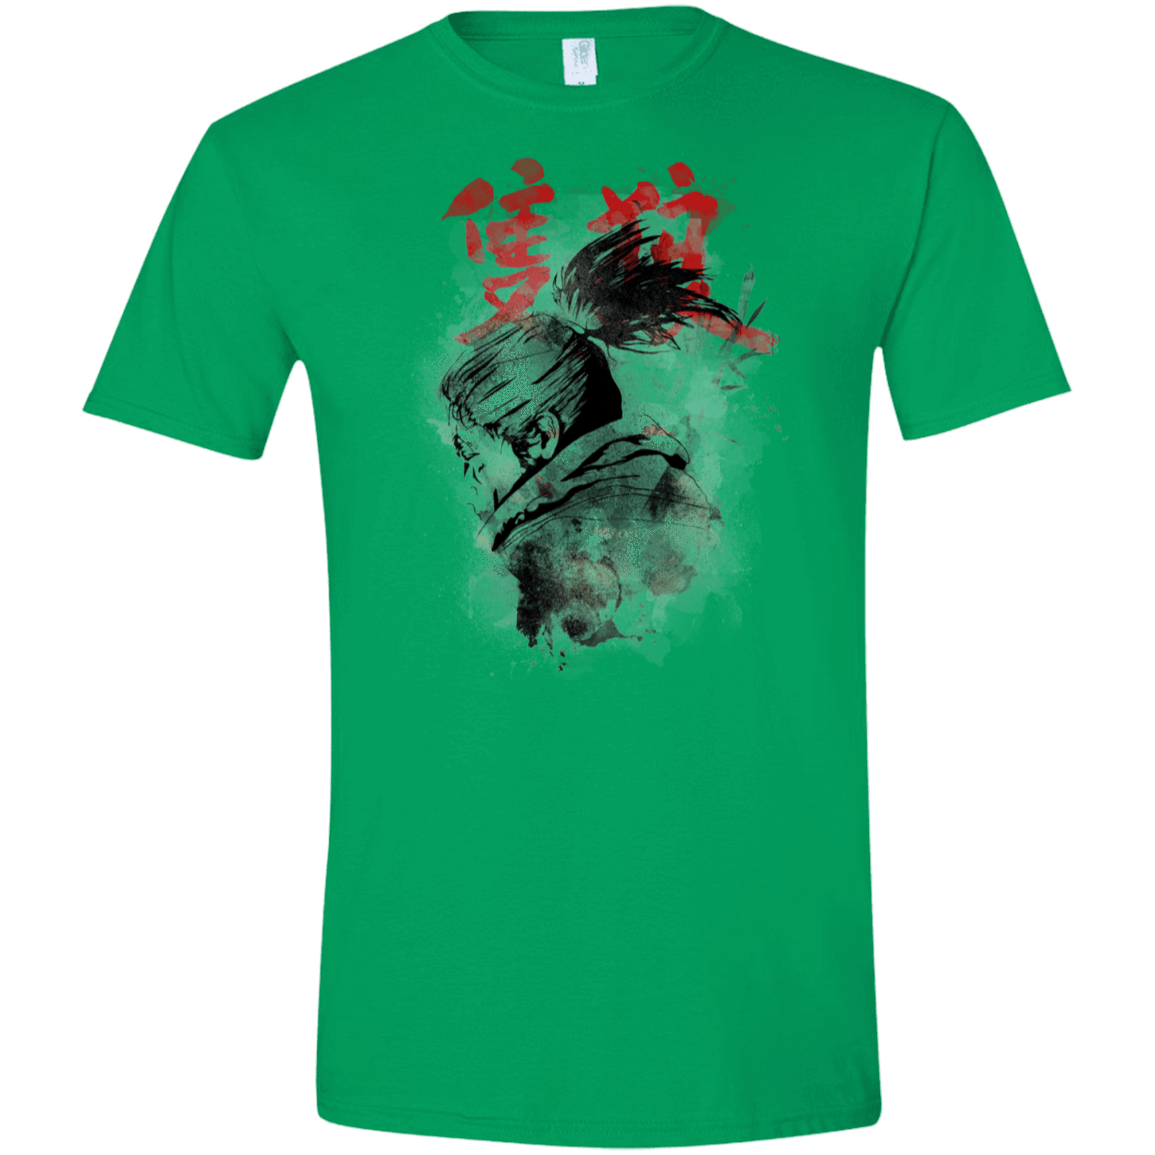 T-Shirts Irish Green / S Shinobi Spirit Men's Semi-Fitted Softstyle